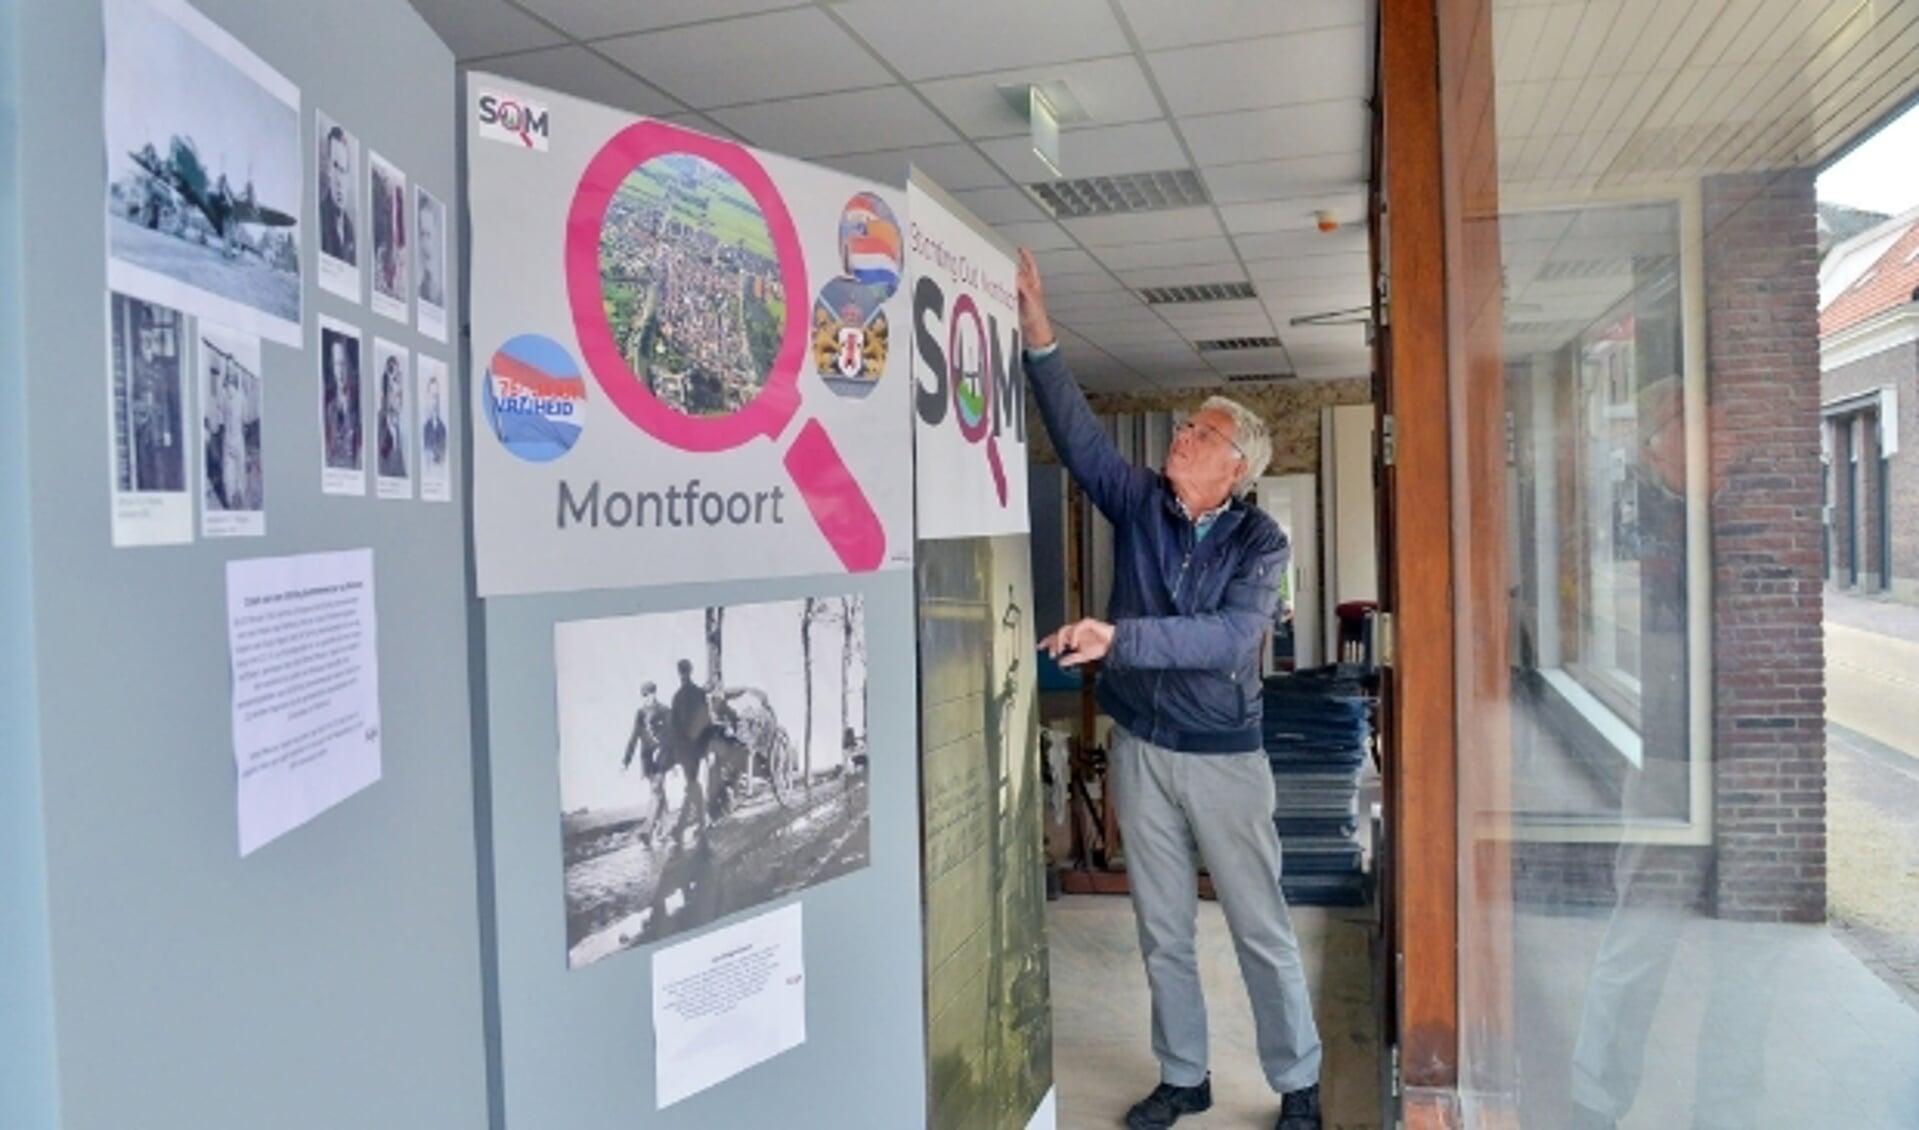 De expositie over 75 jaar Vrijheid van de Stichting Oud Montfoort wordt ingericht  en is tot 1 juni in de etalages in de Keizerstraat te bewonderen. (Foto: Paul van den Dungen)